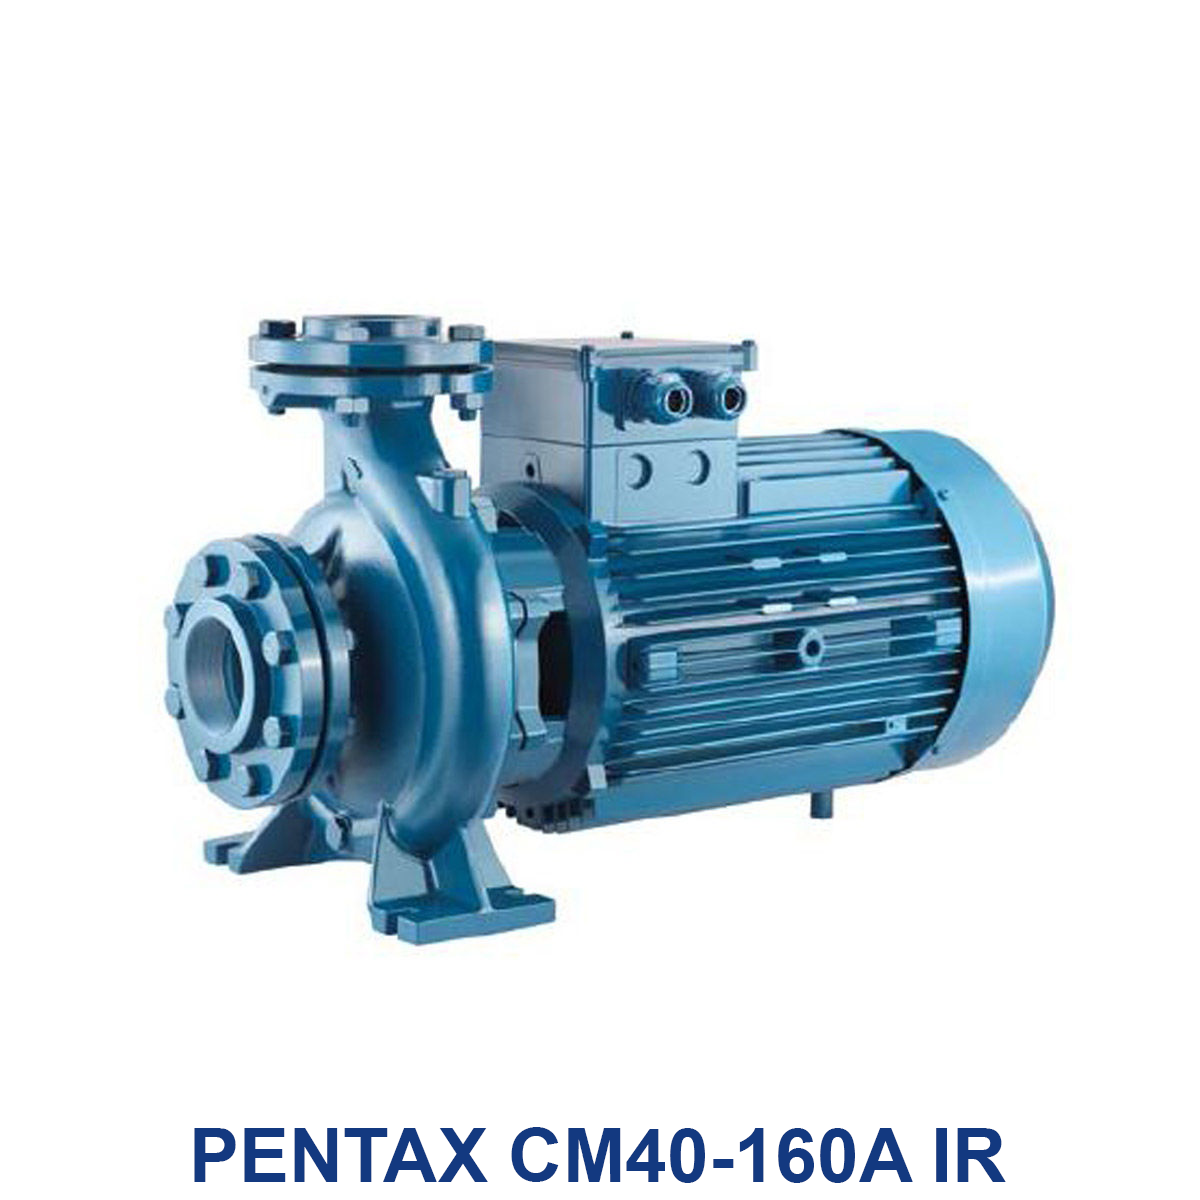 PENTAX-CM40-160A-IR